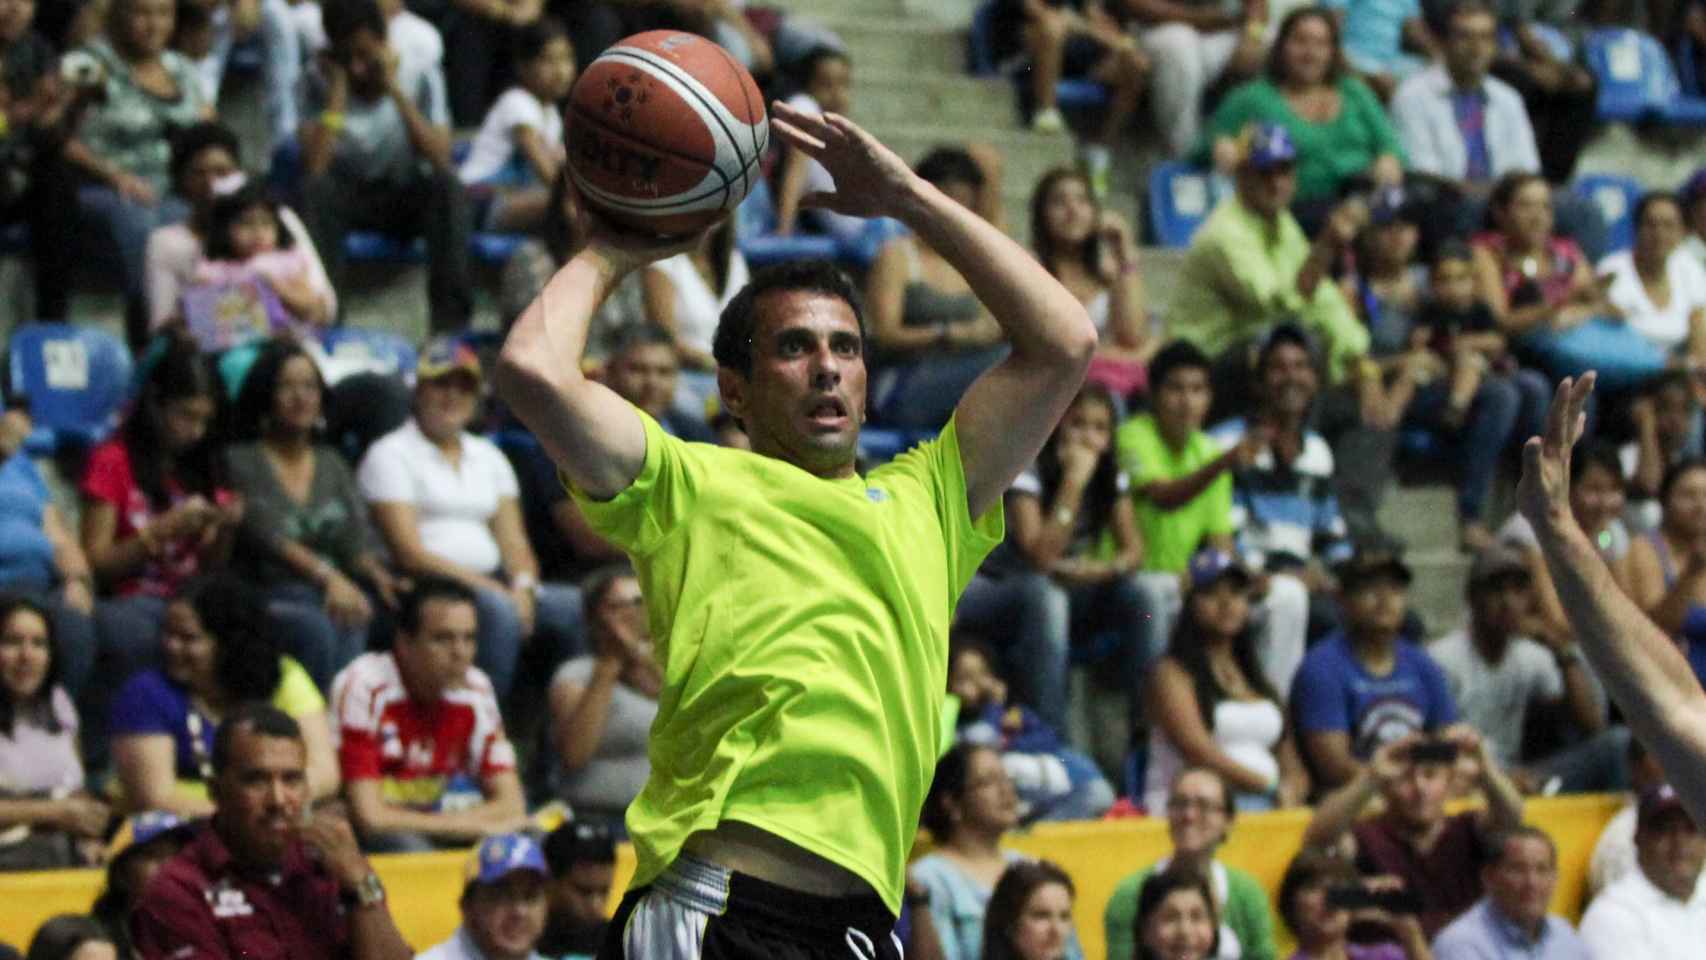 Capriles recoge un rebote en un partido de basket jugado en Caracas el 2013